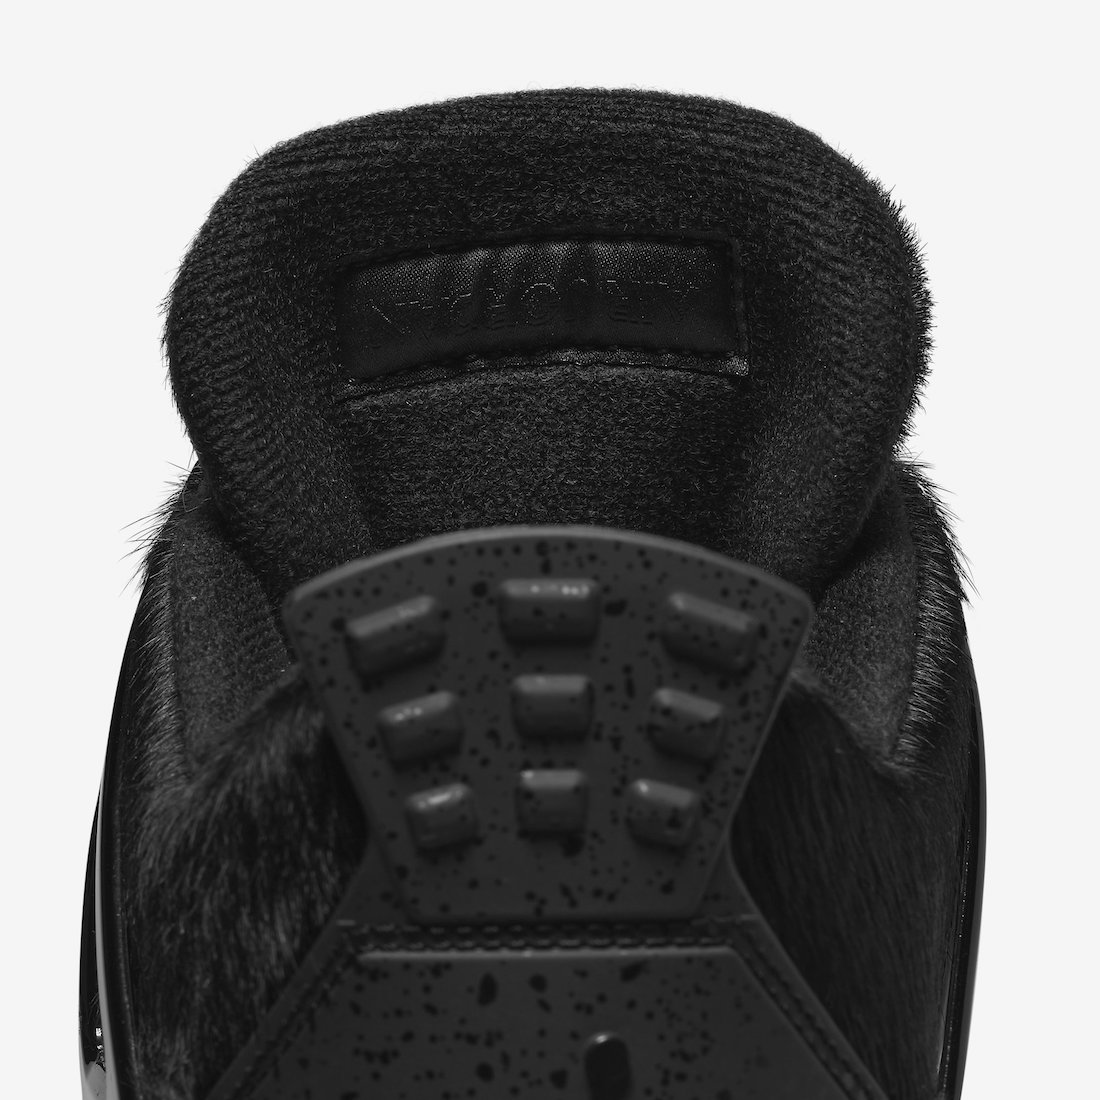 Air Jordan 4 Golf Black Cat CU9981-001 Release Date Info